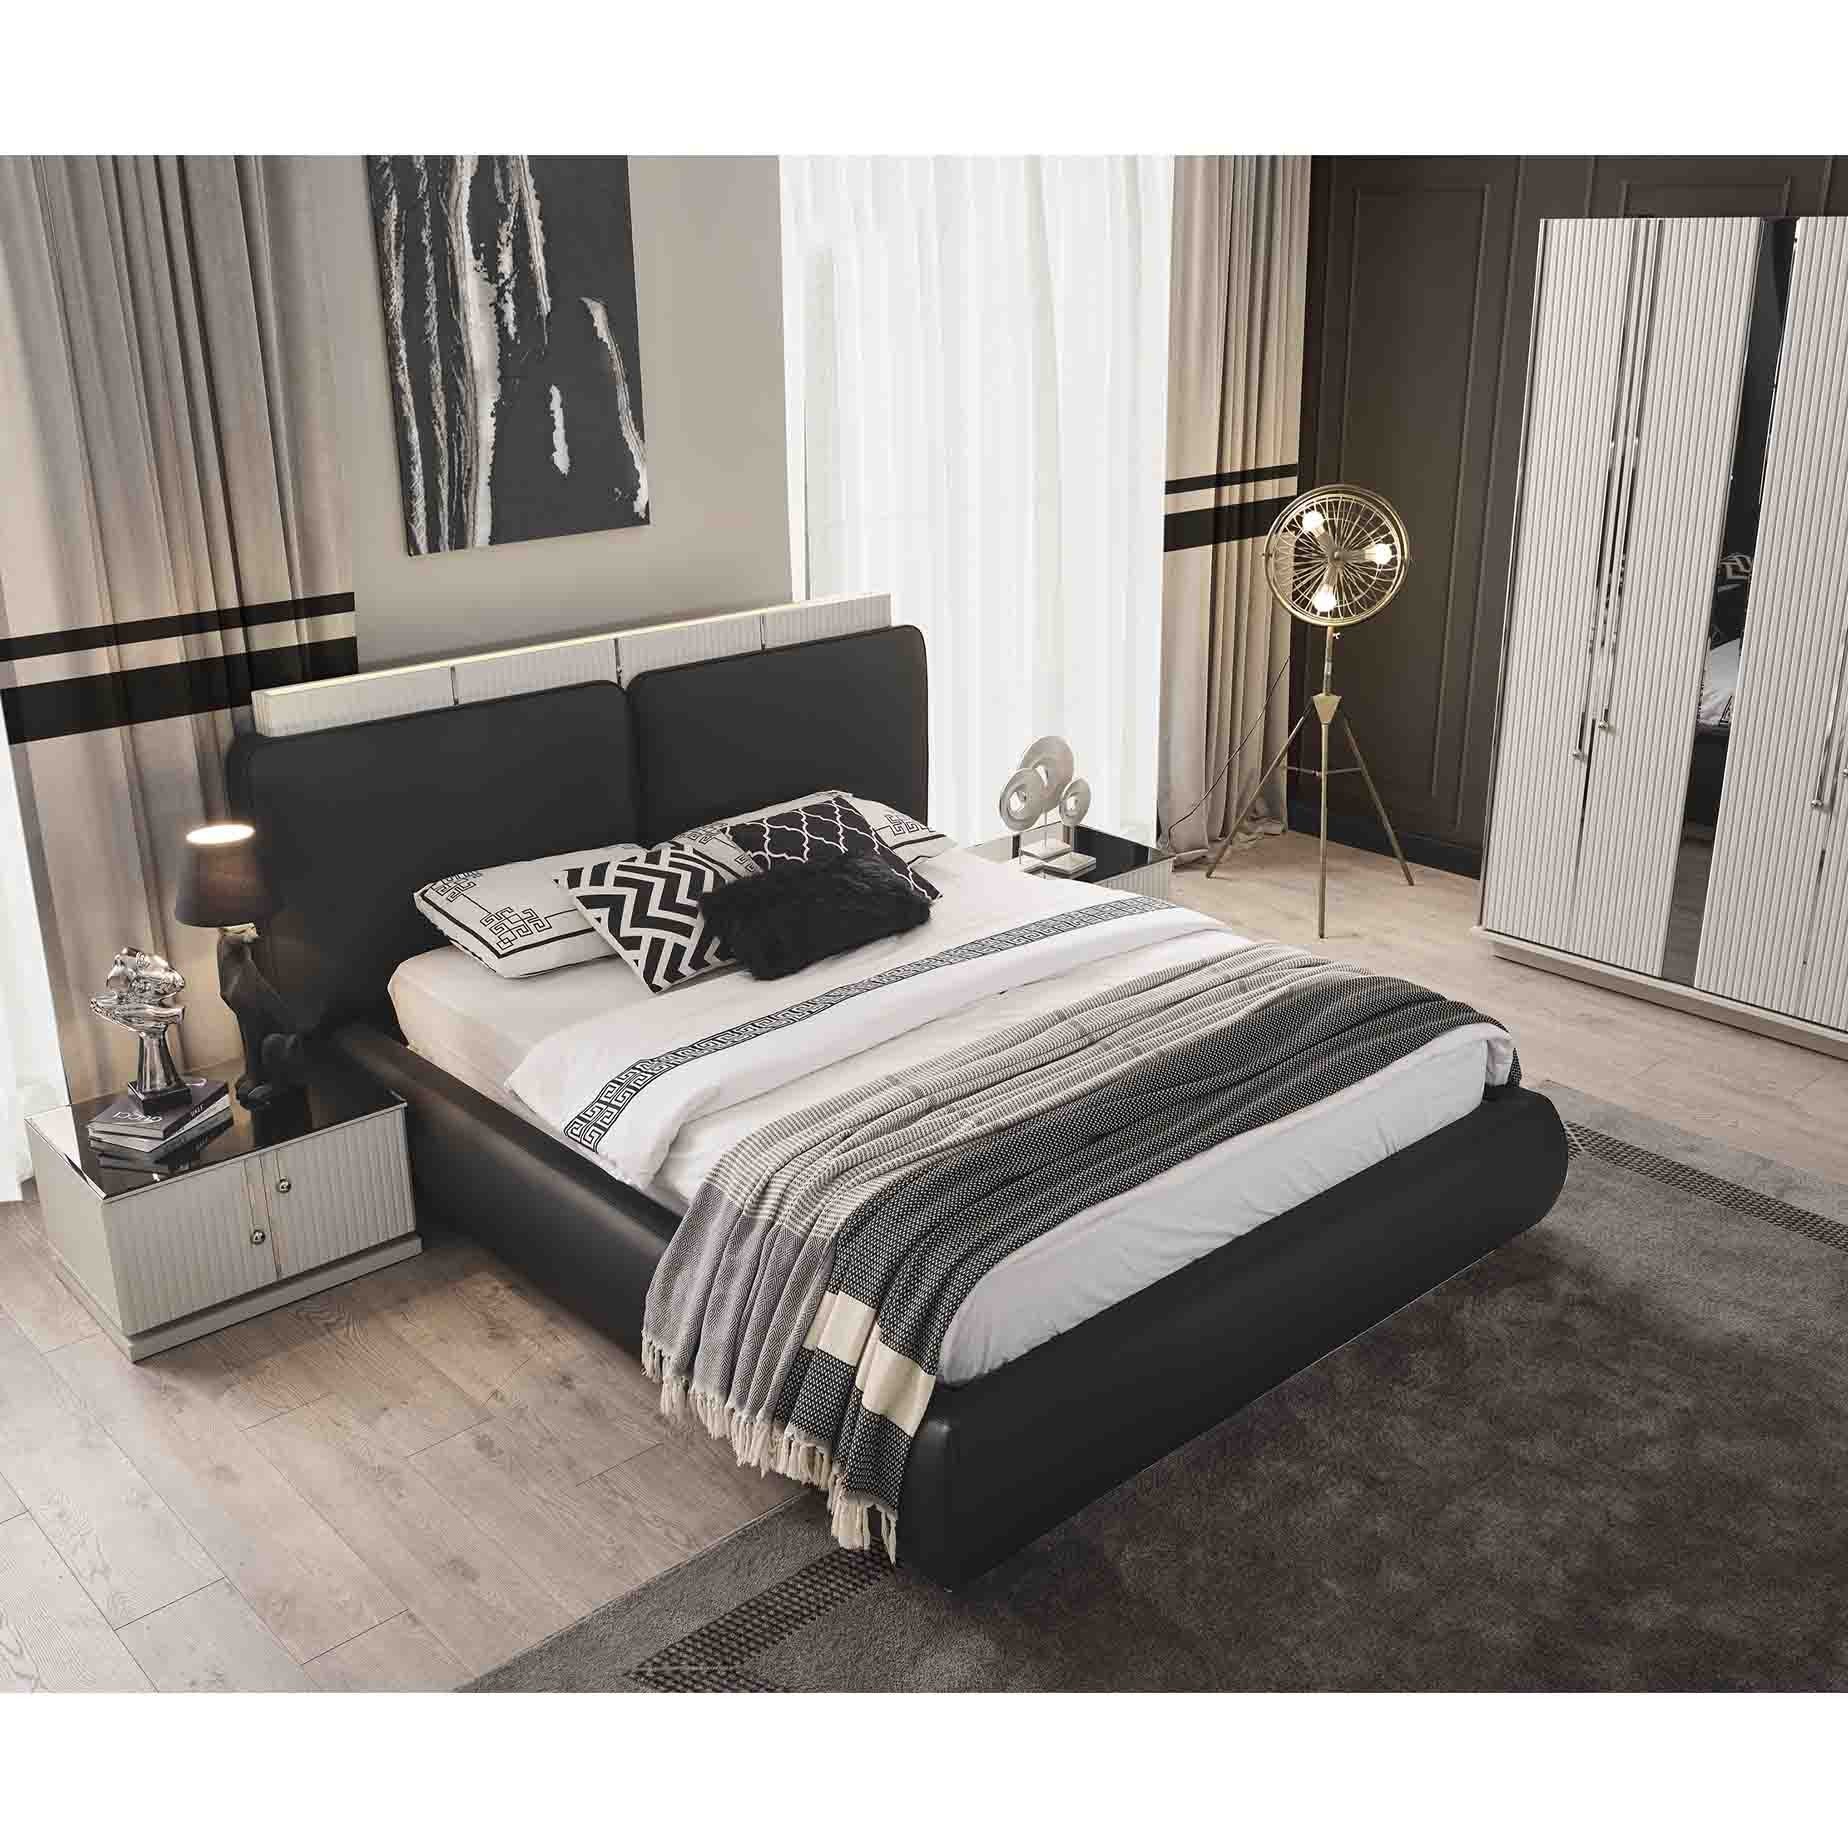 Vizyon 160X200cm Bed Without Storage